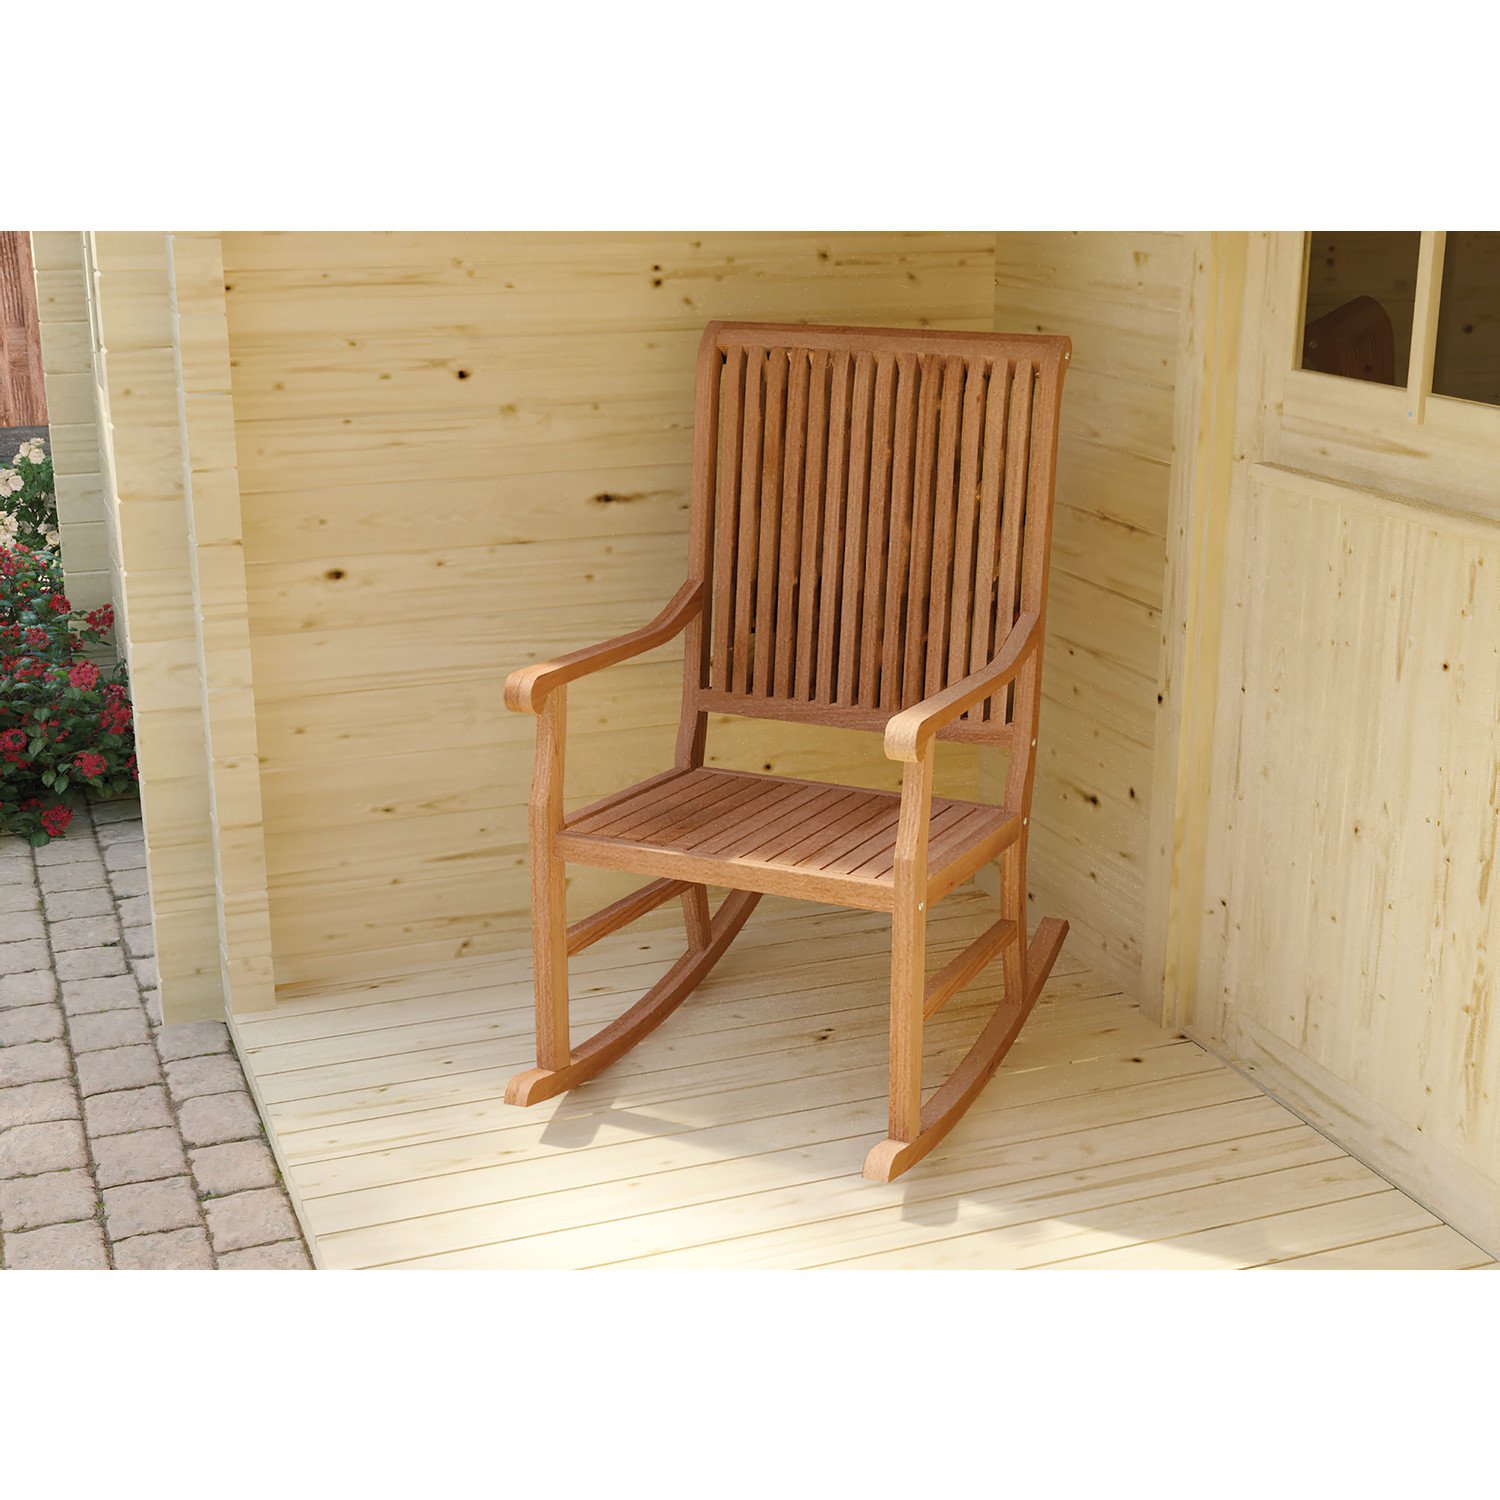 kust Zaailing Uitrusting Hardhouten meubelen Teak schommelstoel Afmeting: L117xB89xH93cm - Robben  Buitenleven